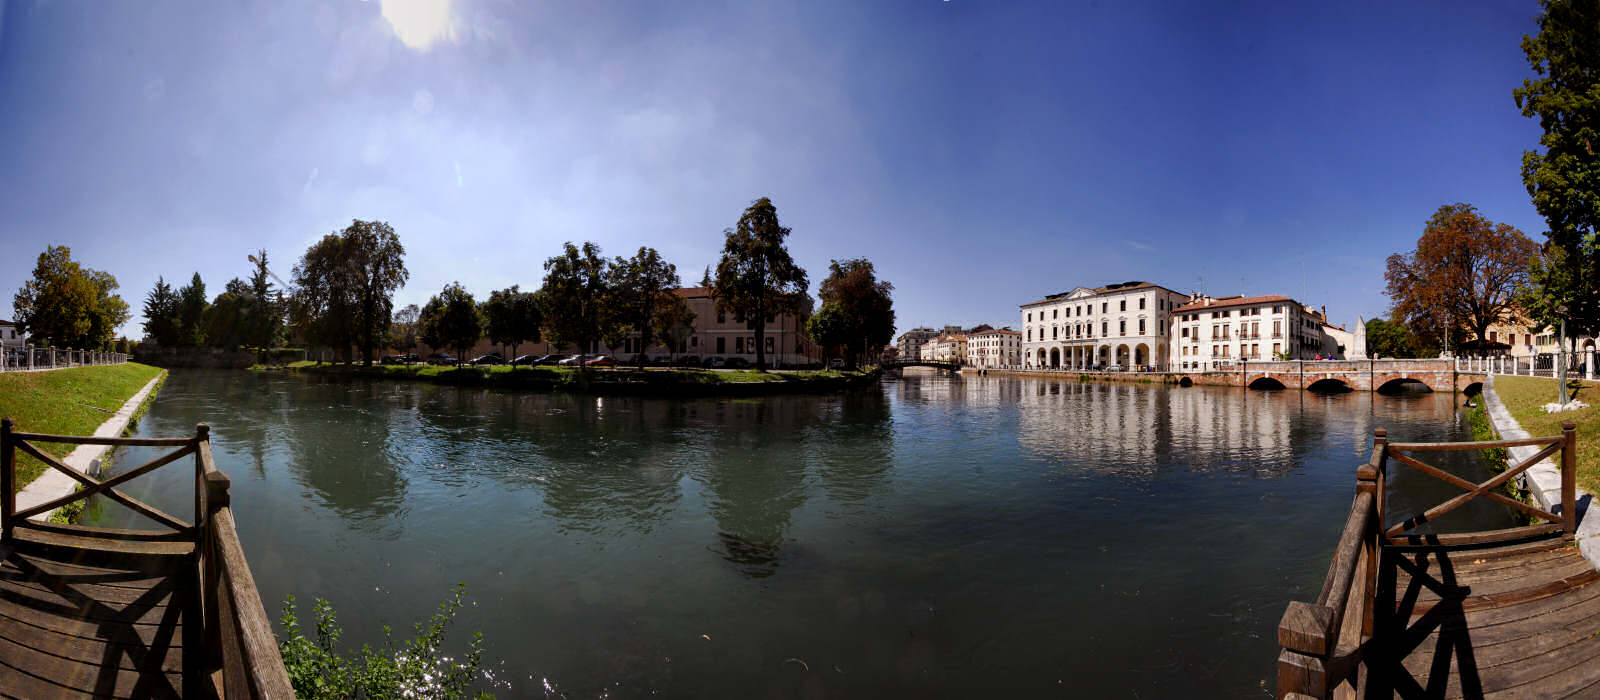 Treviso - fiume Sile e Cagnan